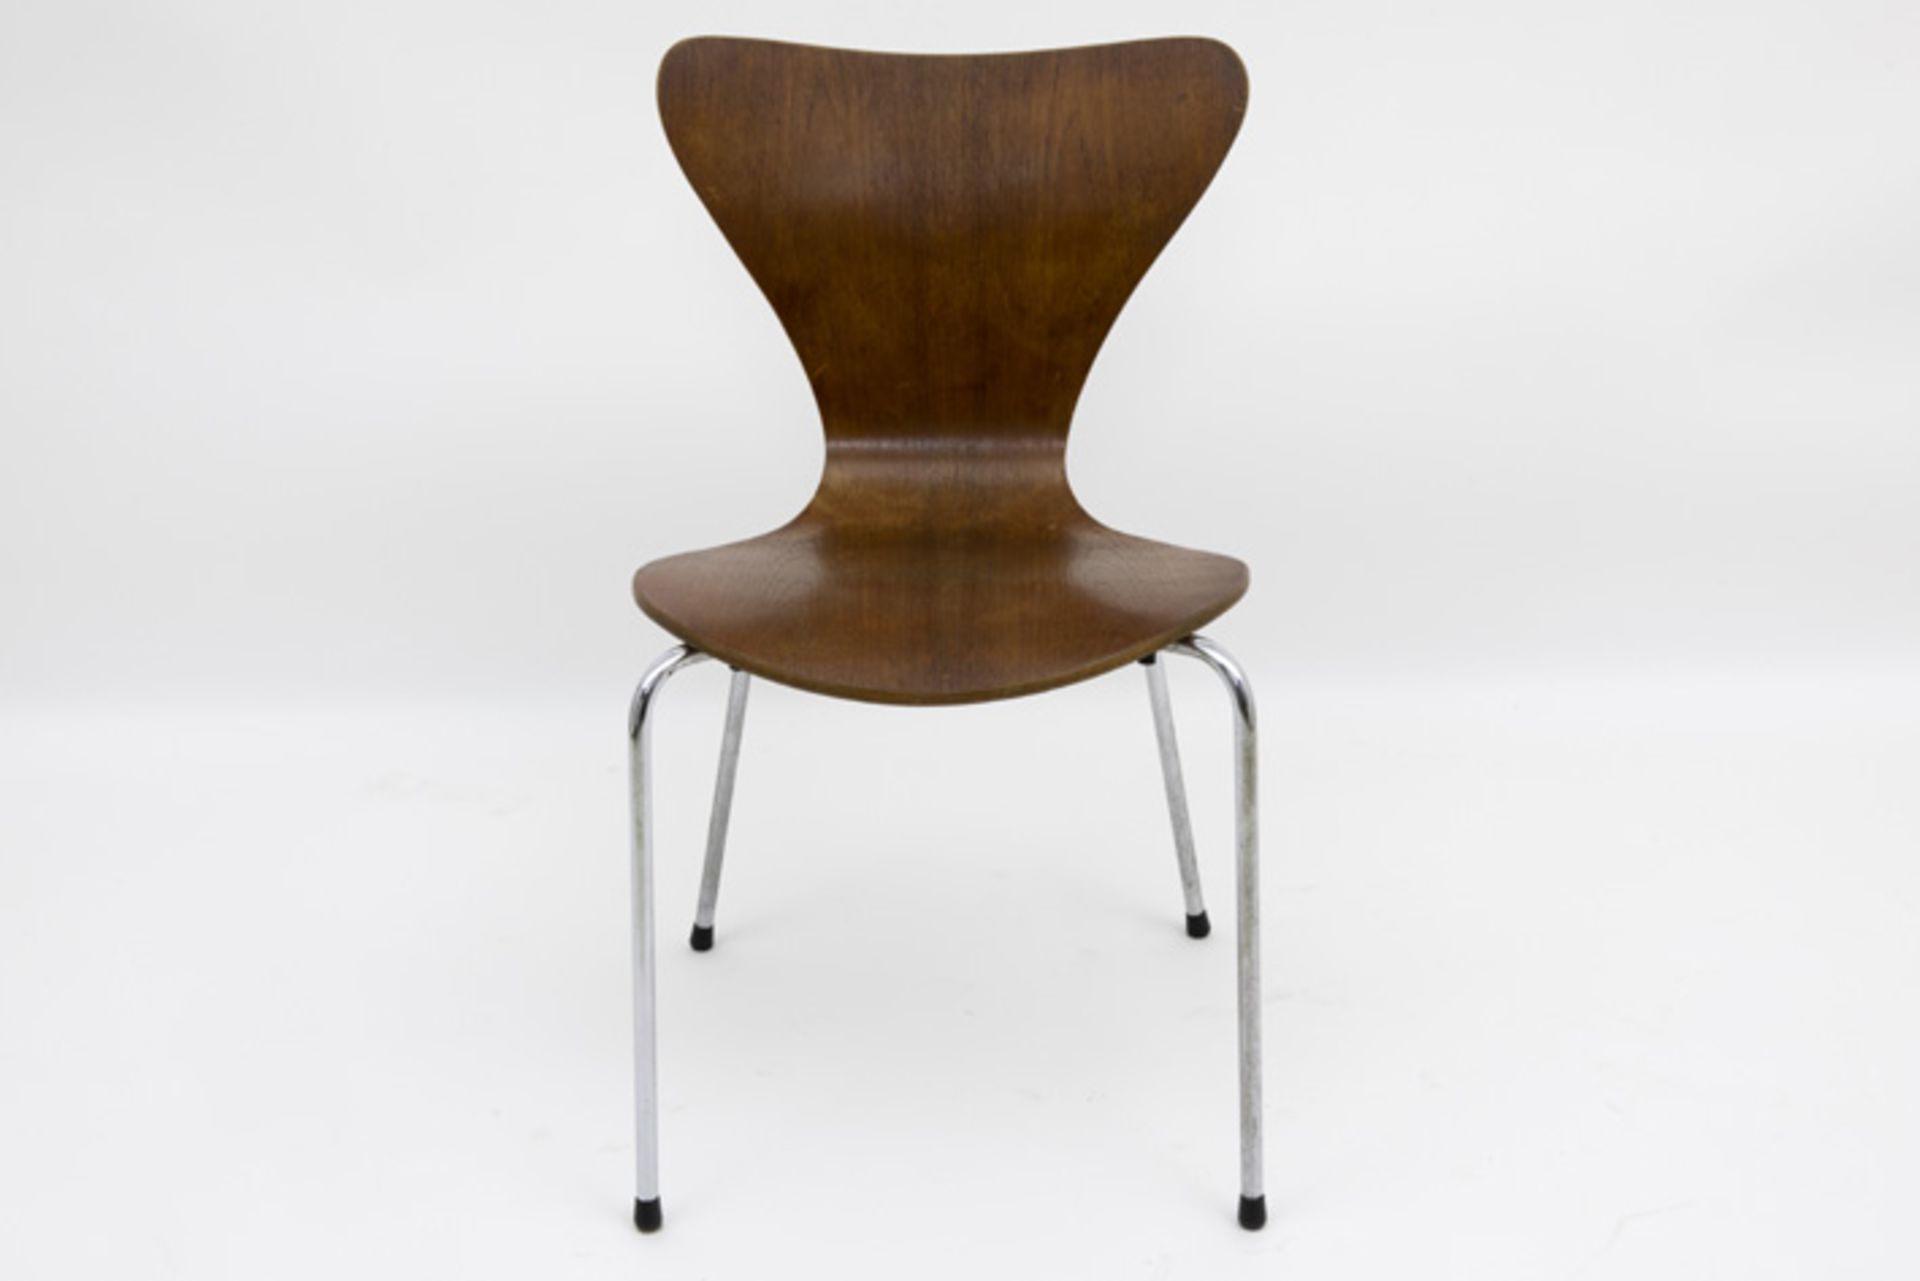 Zgn "Butterfly" - stoel naar het ontwerp van Jacobsen dd 1955 ||"Butterfly" chair after the Jacobsen